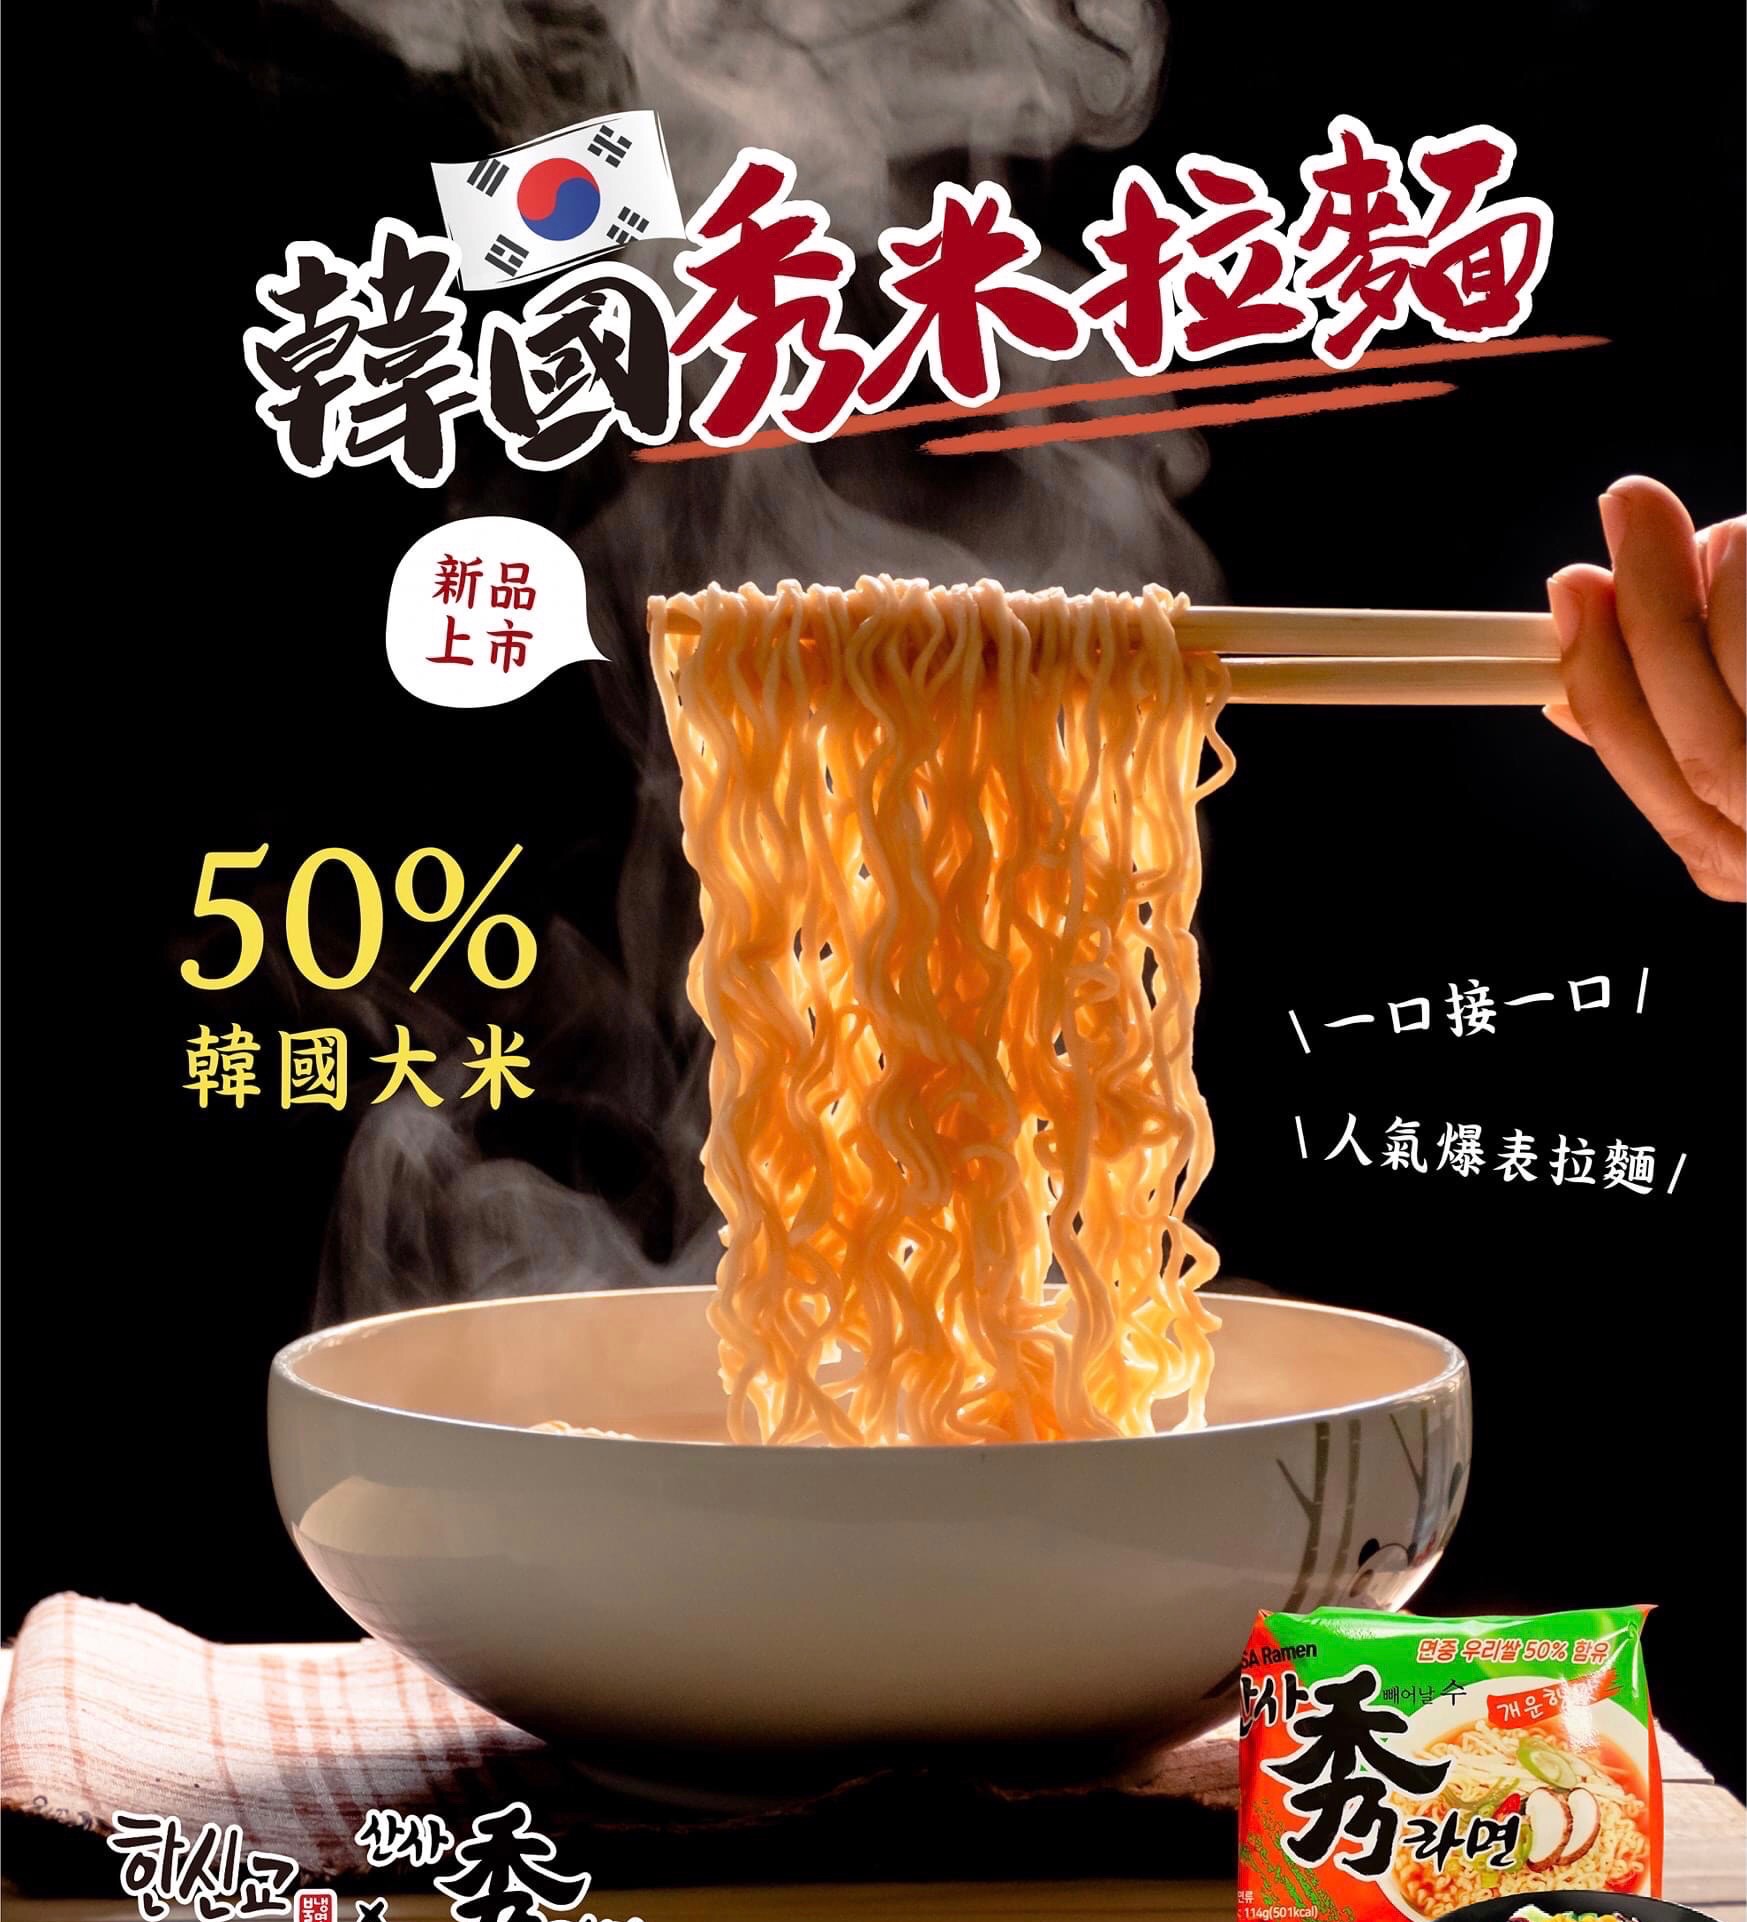 【爆款】韓國秀米拉麵+韓式炸醬米麵